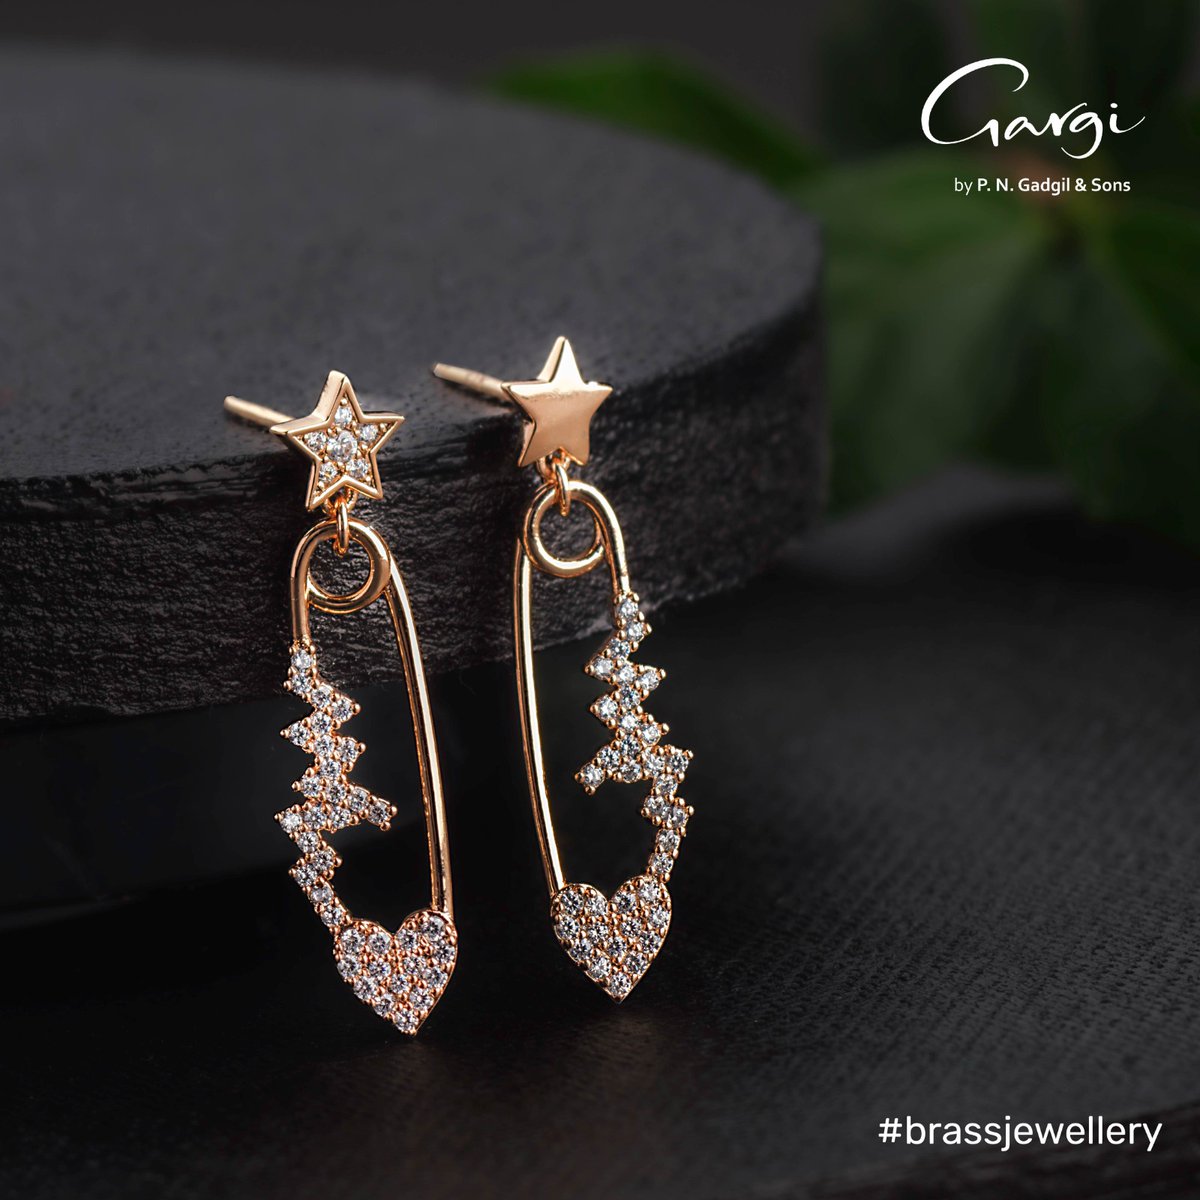 Dazzle under the celestial glow with these star-dangling earrings 

#earrings #brassjewellery #brassearrings #stars #jewellery